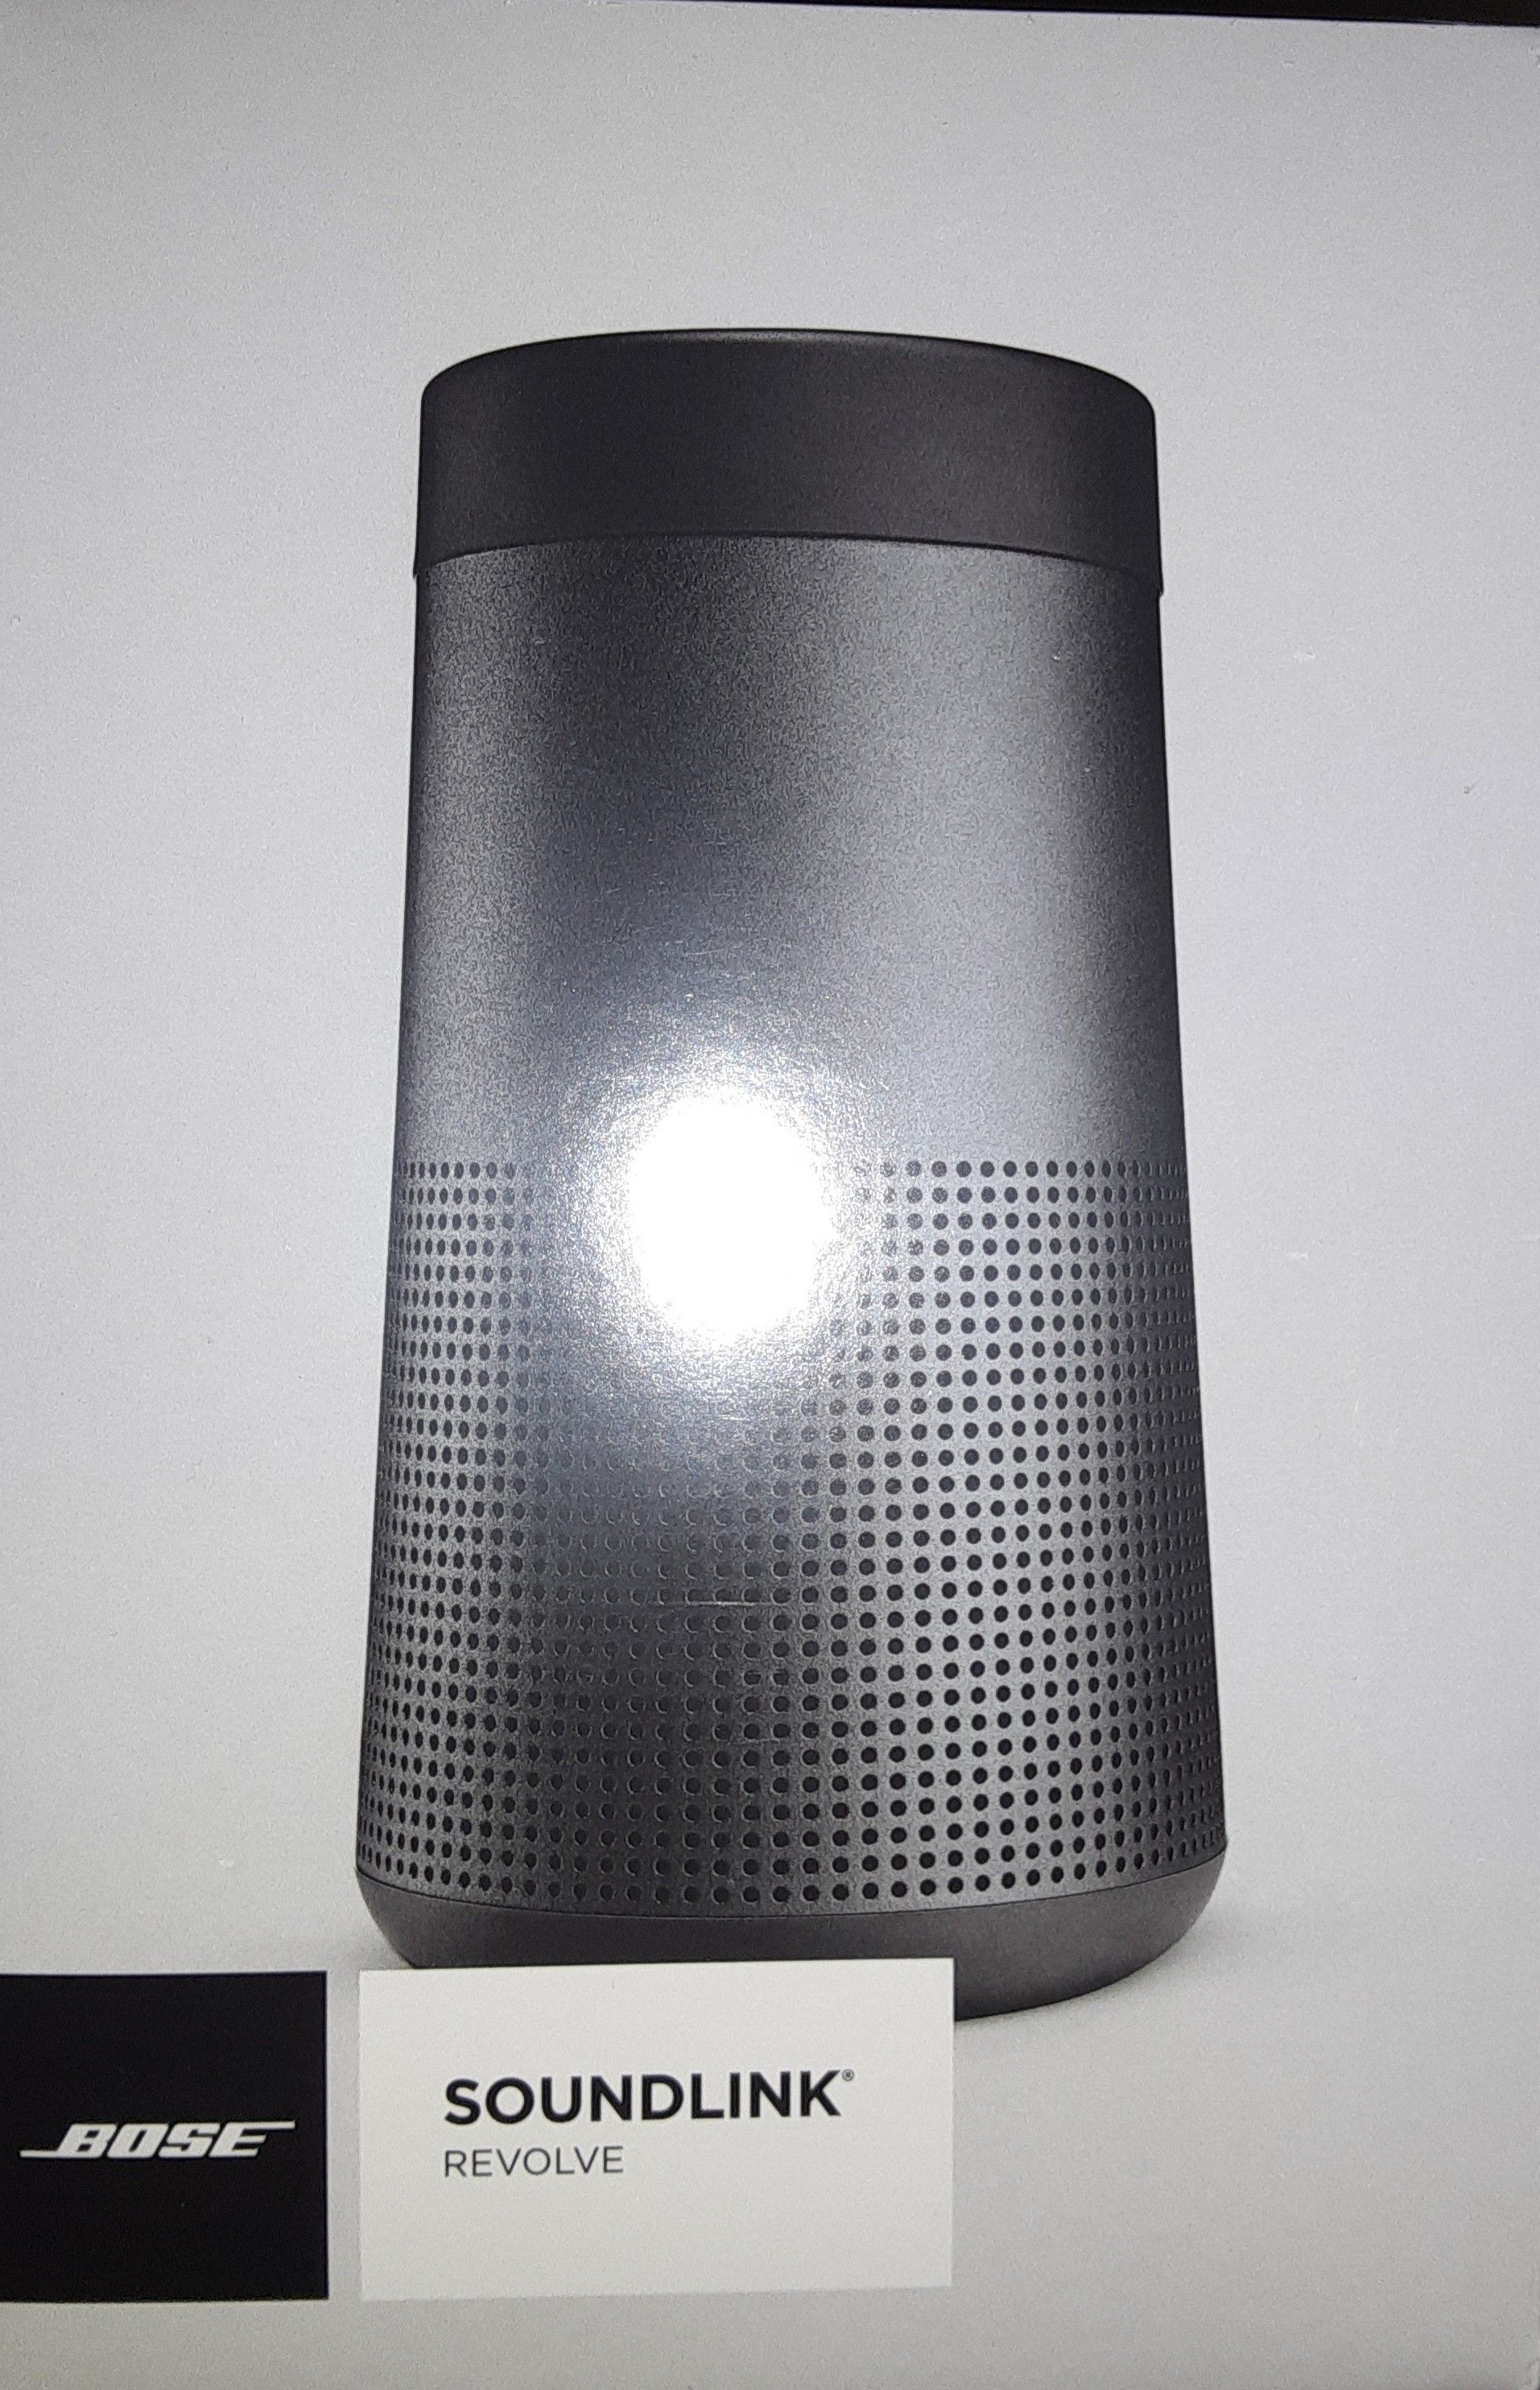 Bose soundlink bluetooth speaker